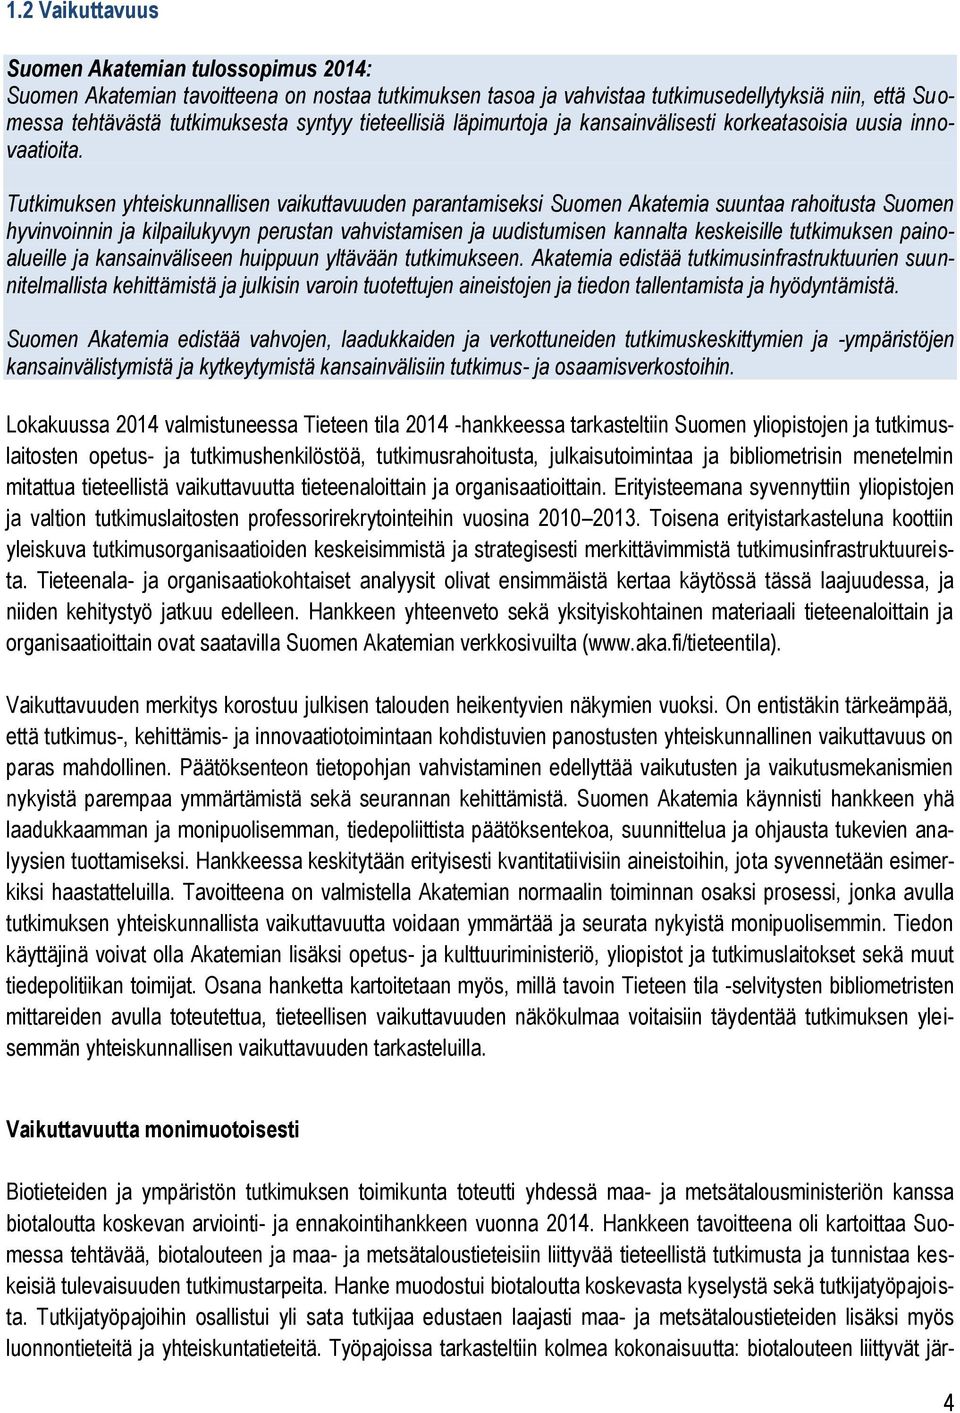 Tutkimuksen yhteiskunnallisen vaikuttavuuden parantamiseksi Suomen Akatemia suuntaa rahoitusta Suomen hyvinvoinnin ja kilpailukyvyn perustan vahvistamisen ja uudistumisen kannalta keskeisille